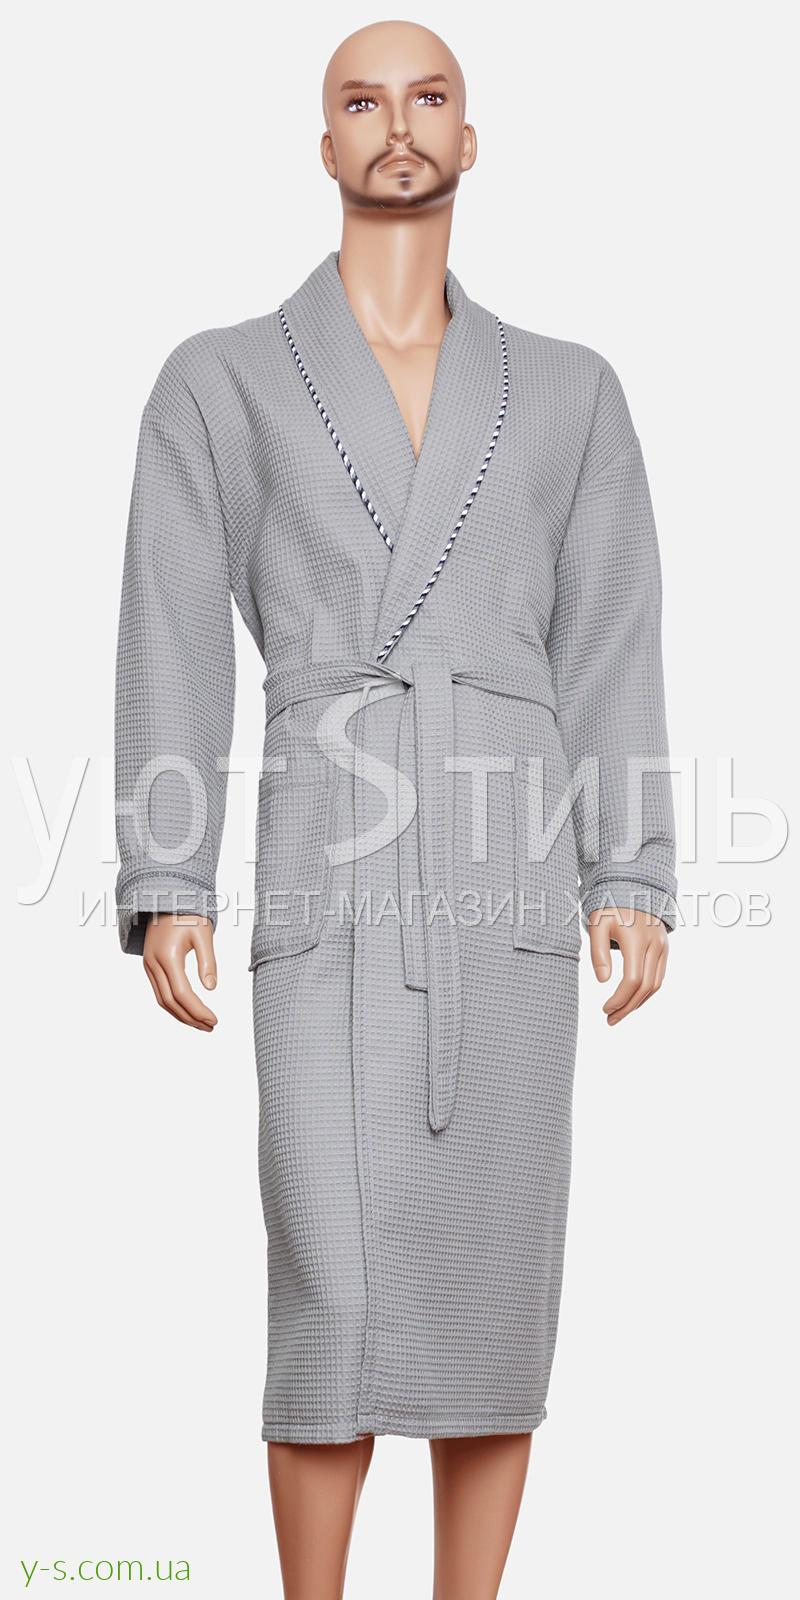 Вафельний чоловічий халат сірого кольору BE2109